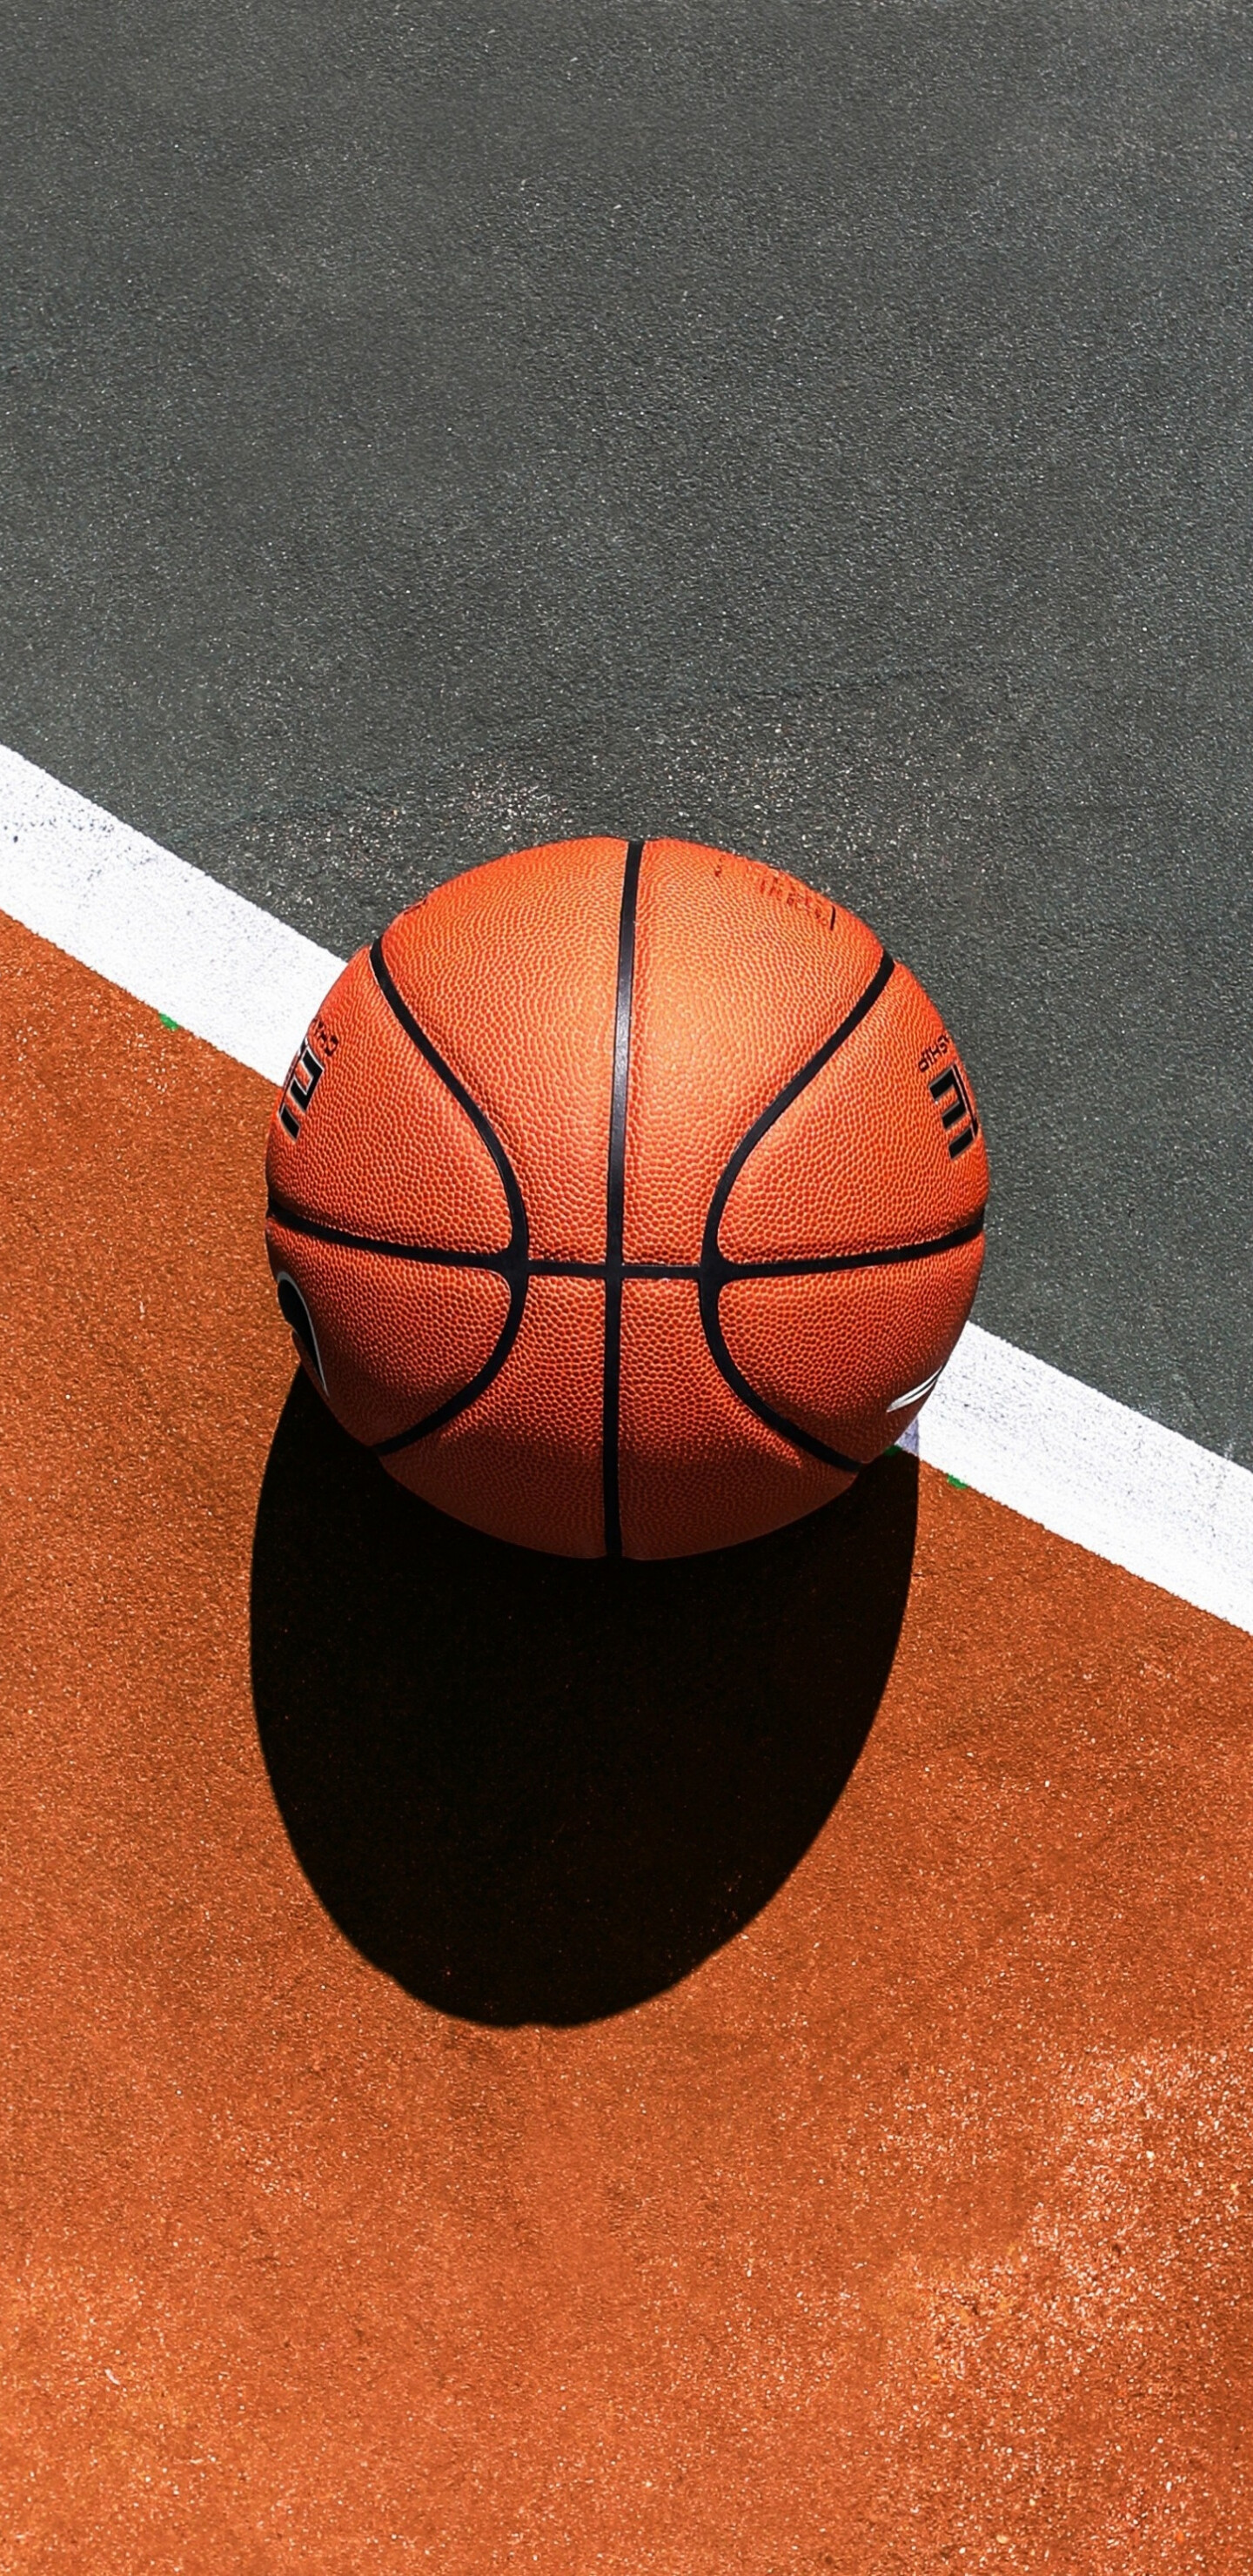 Basketball-Sportplatz, Samsung Galaxy S8, HD-Bildhintergrund, Immersives Erlebnis, 1440x2960 HD Handy